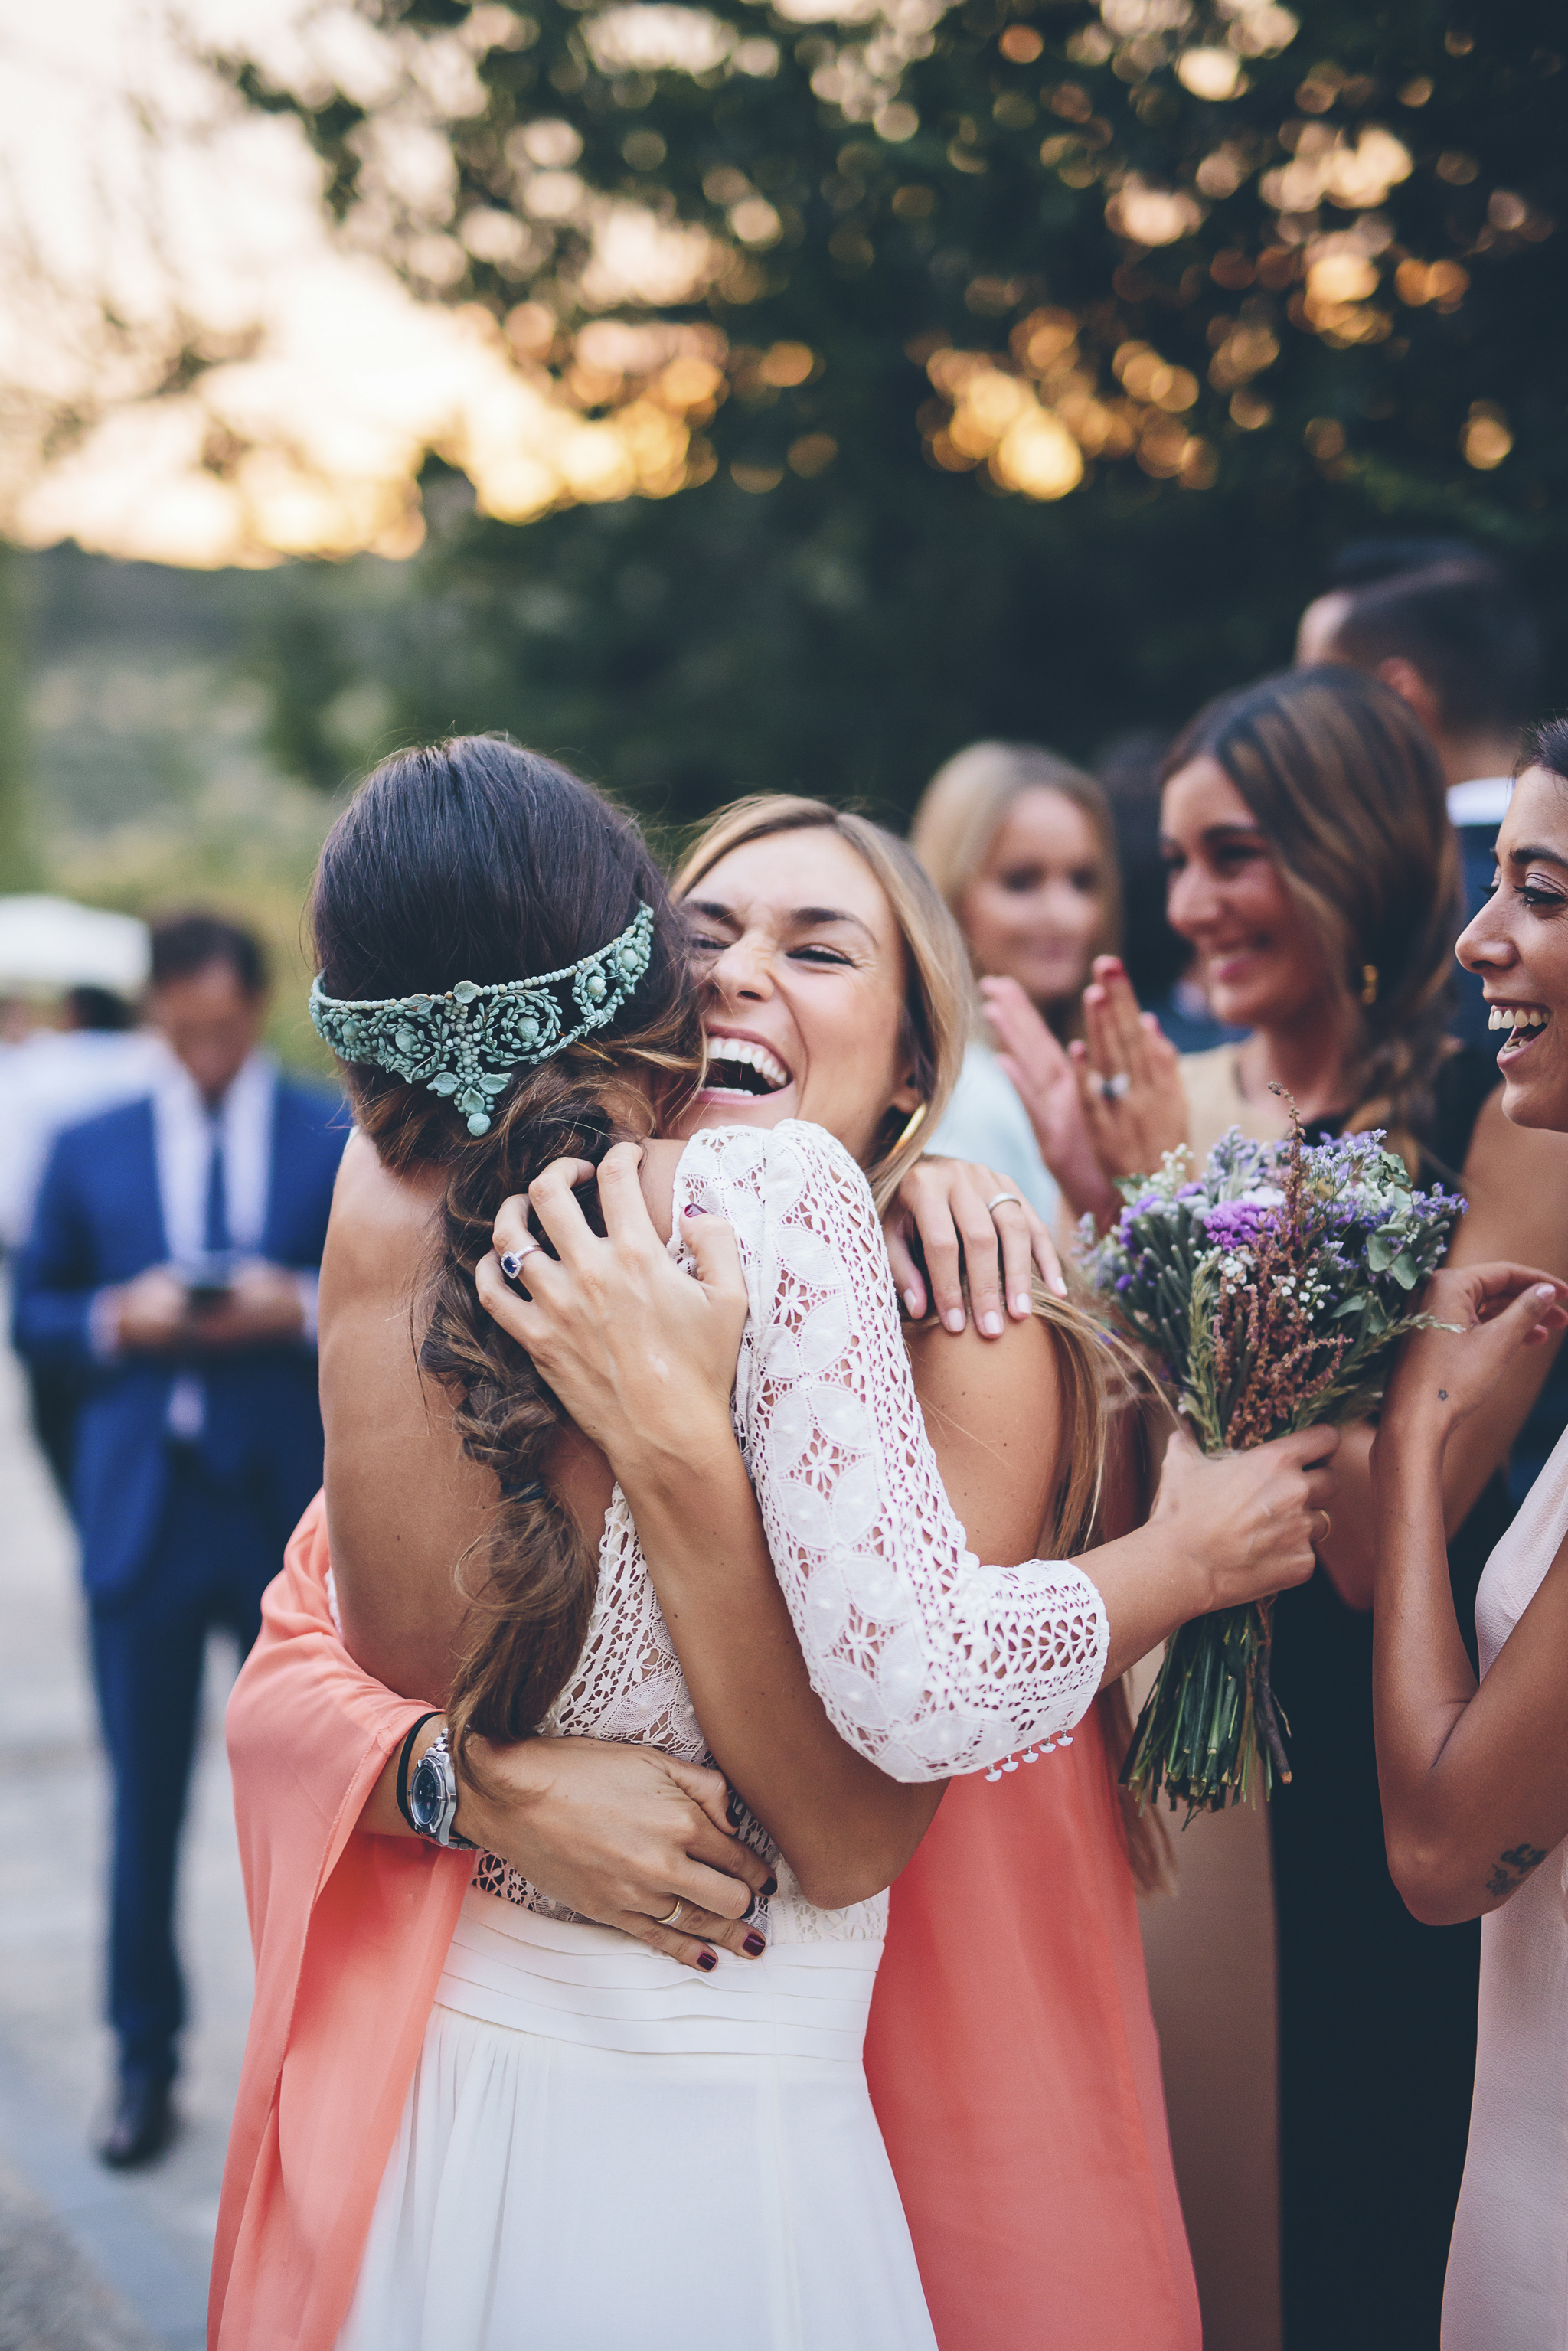 Una de las costumbres más arraigadas es regalar el ramo de novia a una amiga cercana.